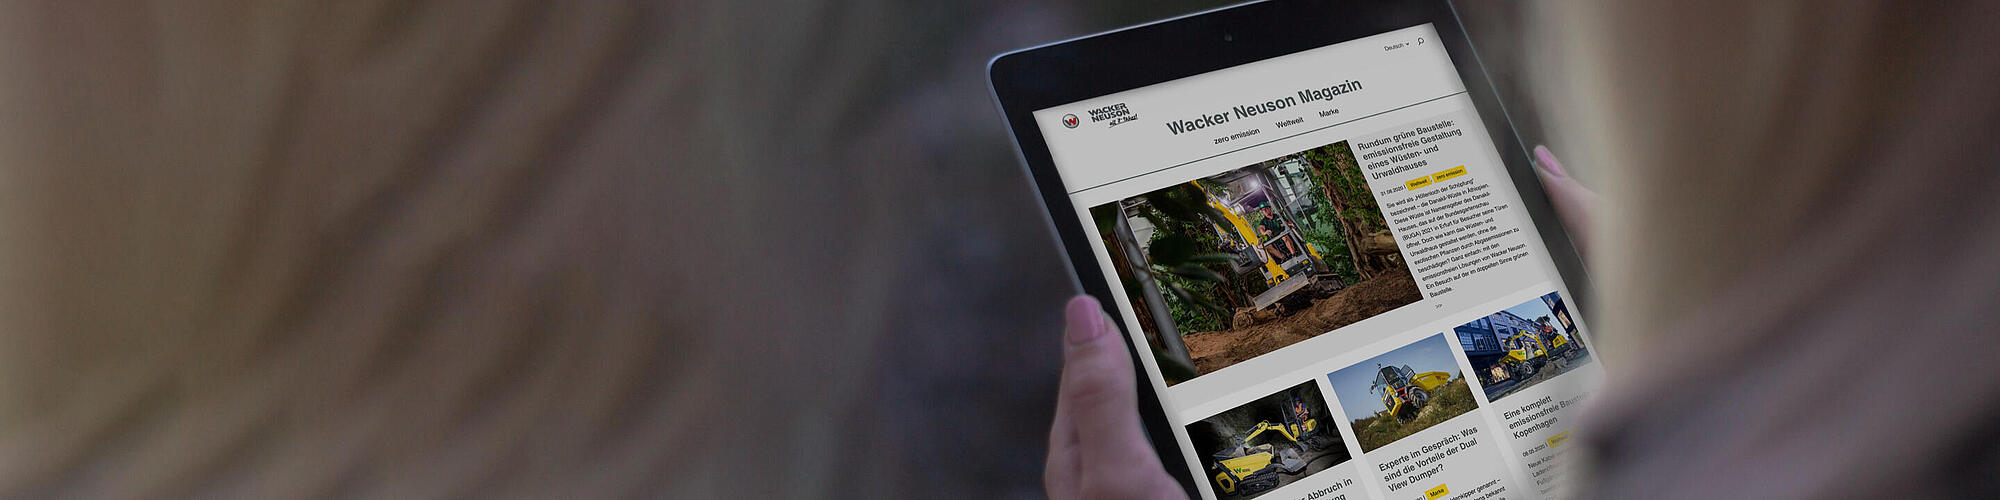 Wacker Neuson Online Magazine on a tablet.